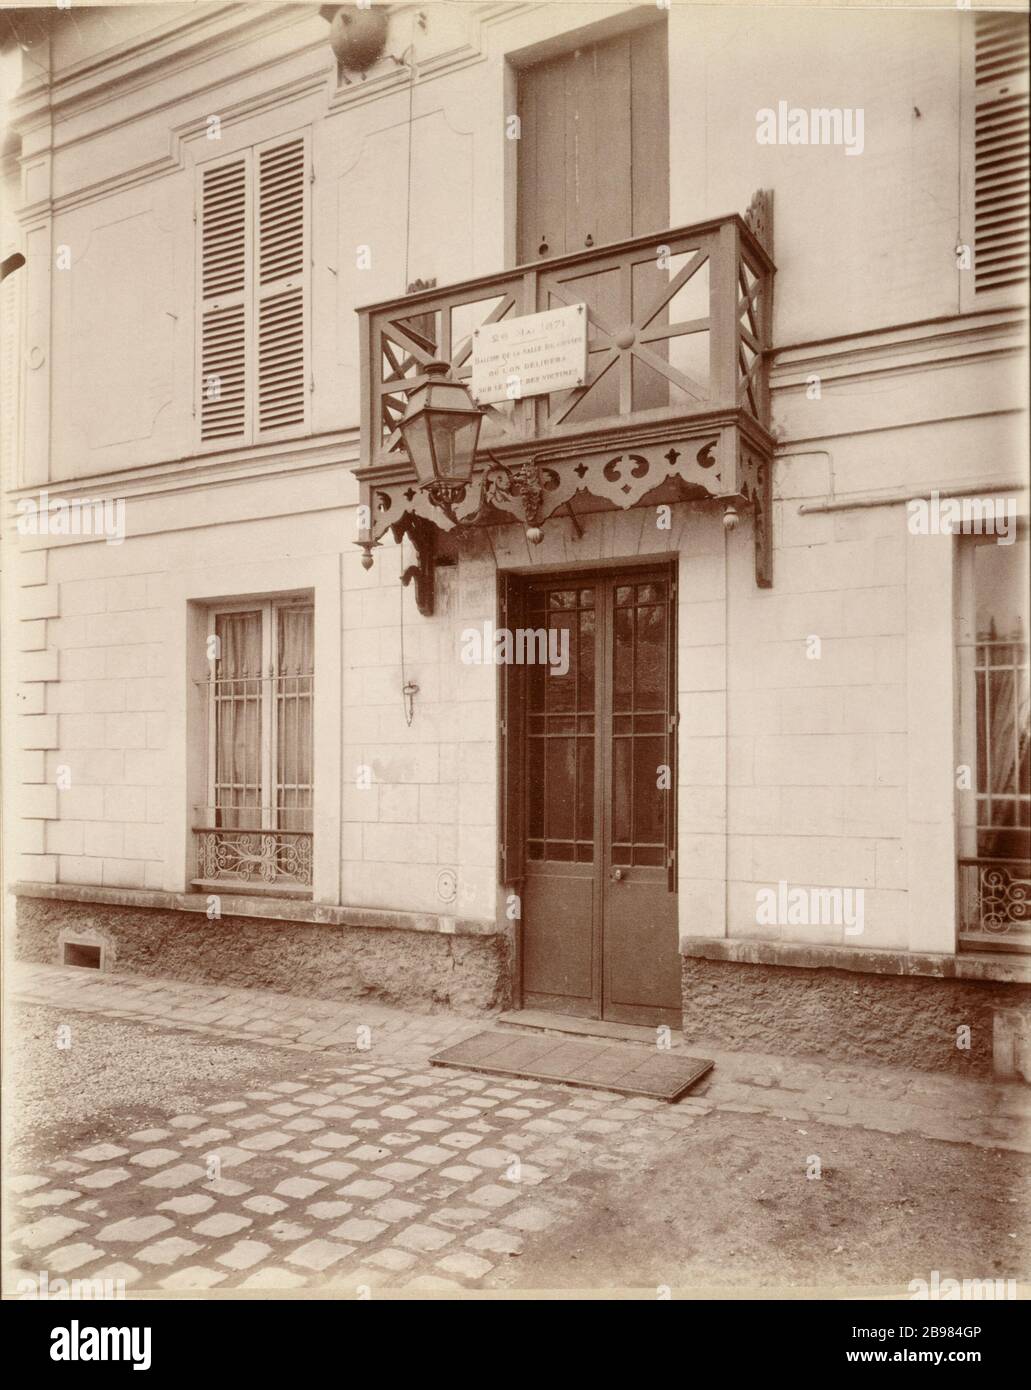 BELLEVILLE Belleville: Emplacement du Massacre des otages (26 Mai 1871), 85 rue Haxo. Paris (XXème), 1901. Photographie d'Eugène Atget. Paris, musée Carnavalet. Stockfoto